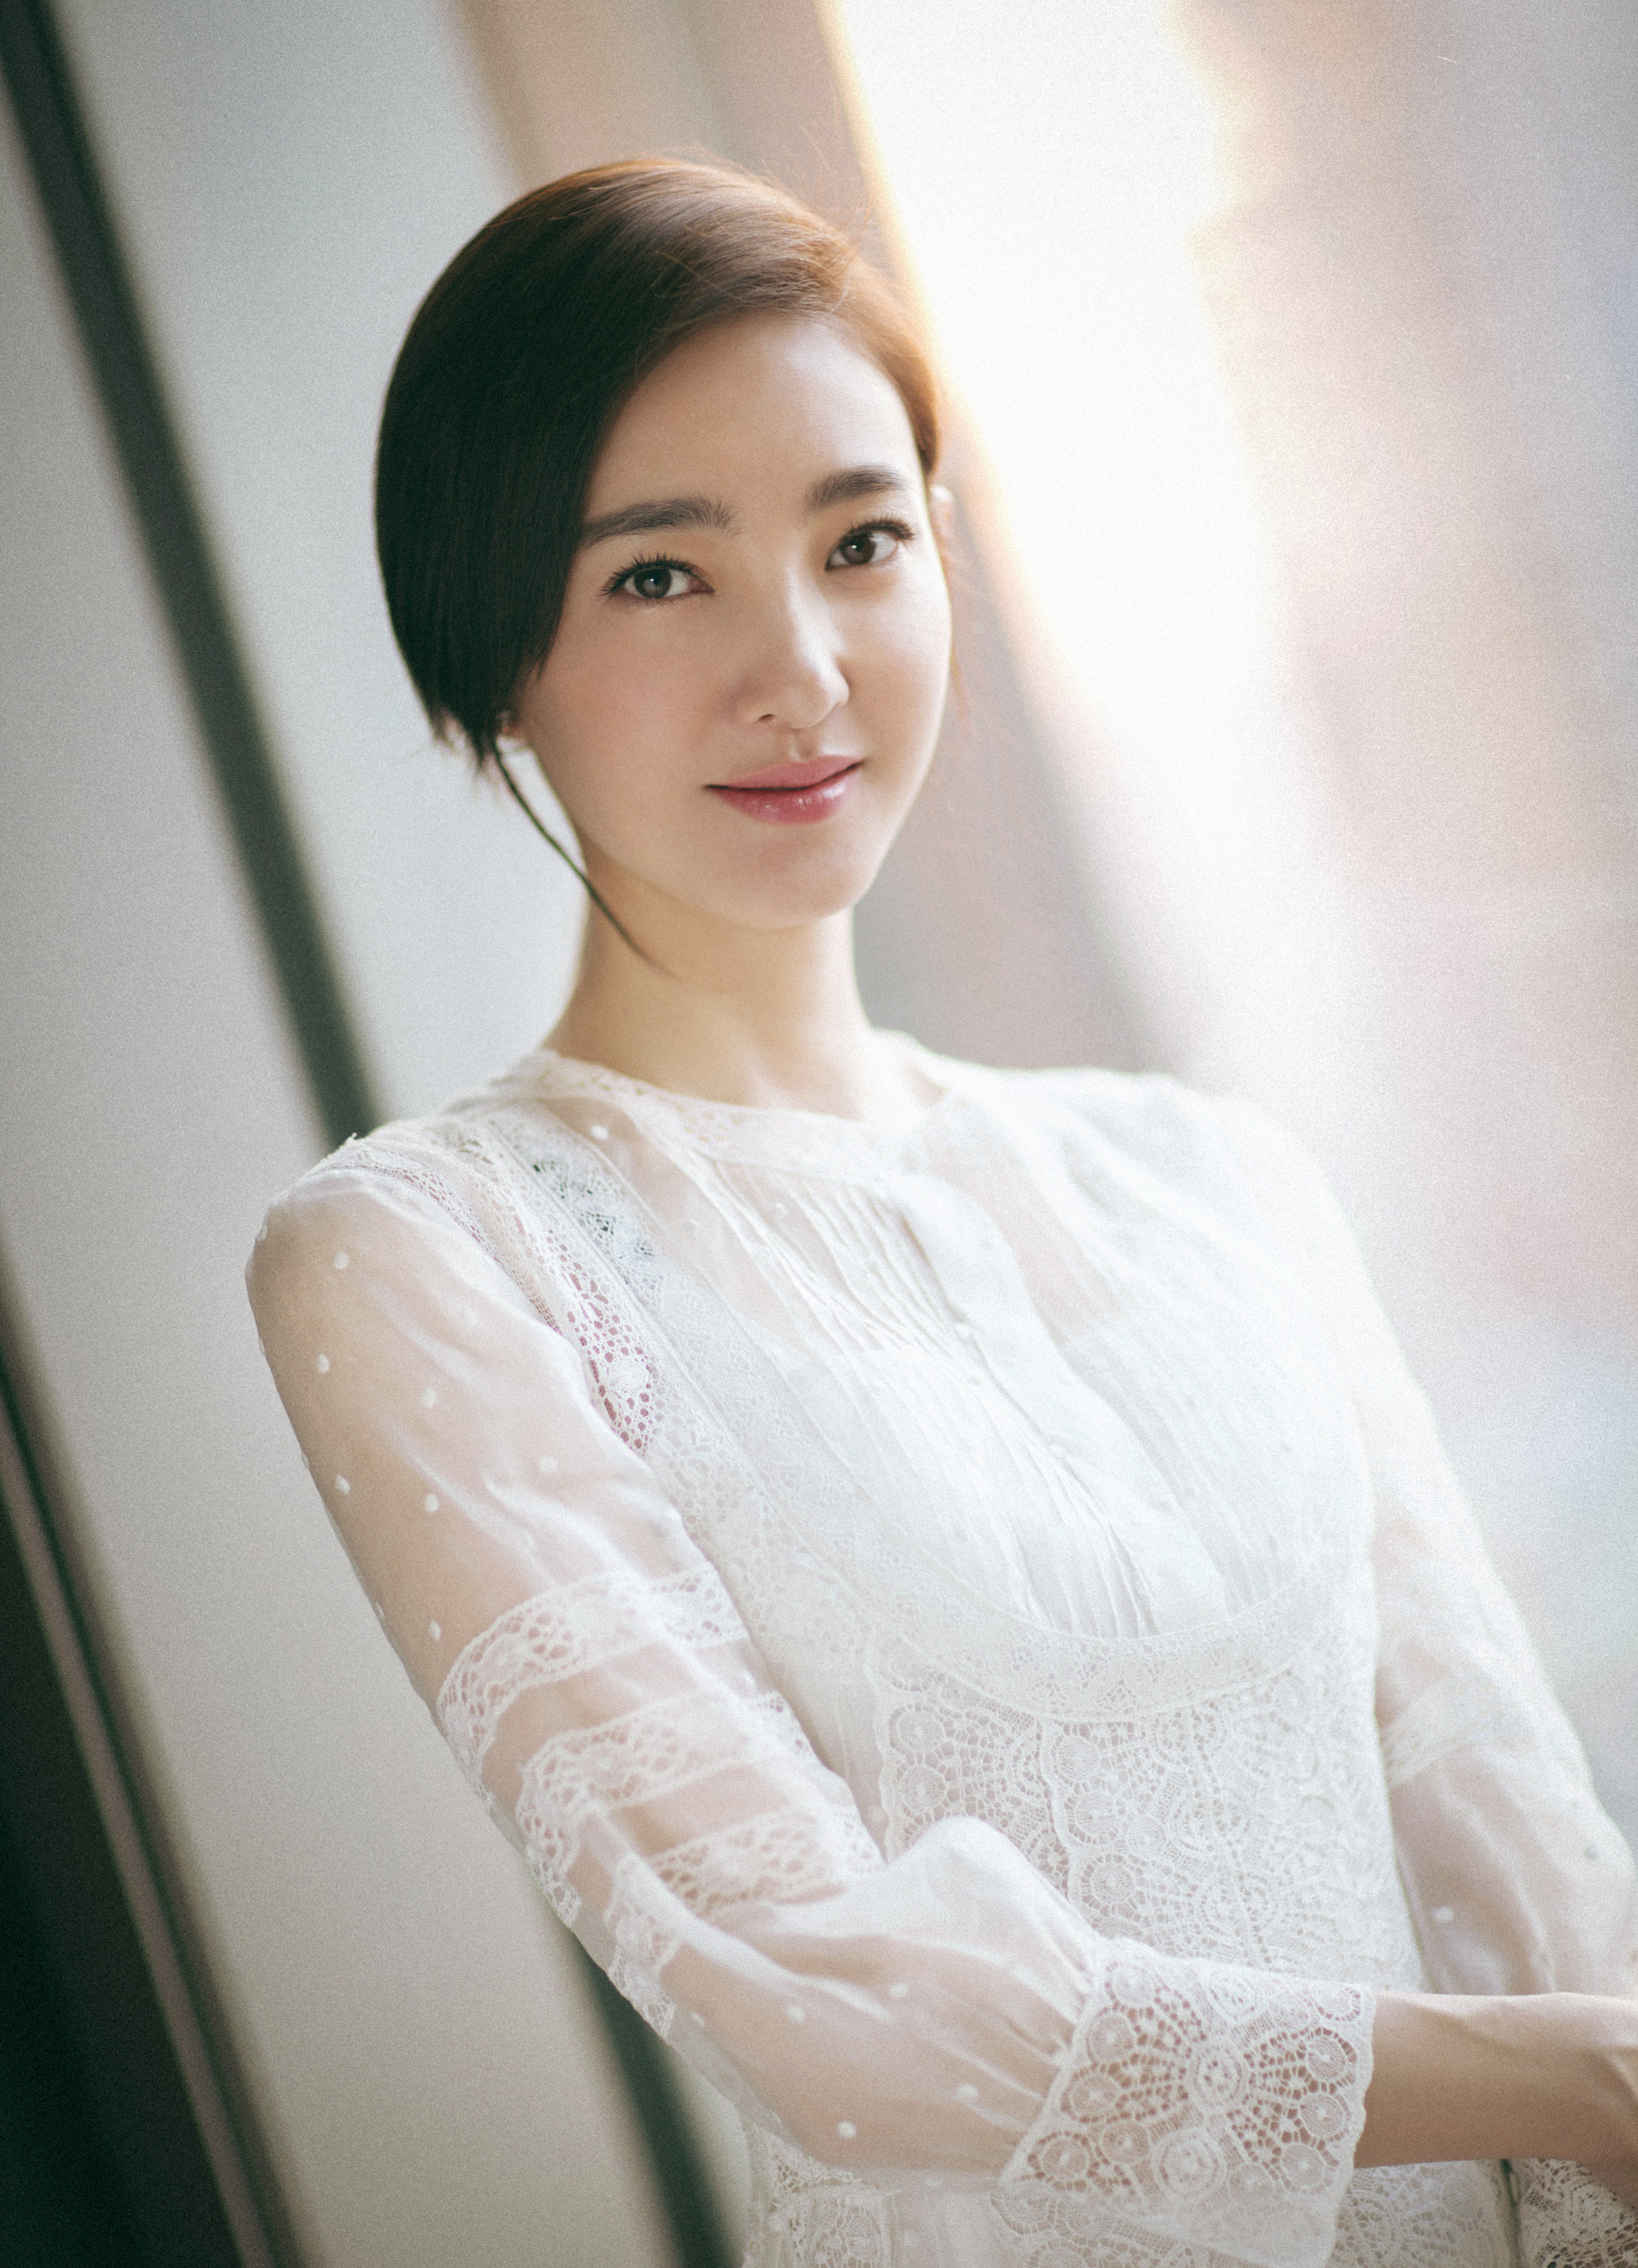 王丽坤身着白色蕾丝薄纱长裙出席活动 优雅精致